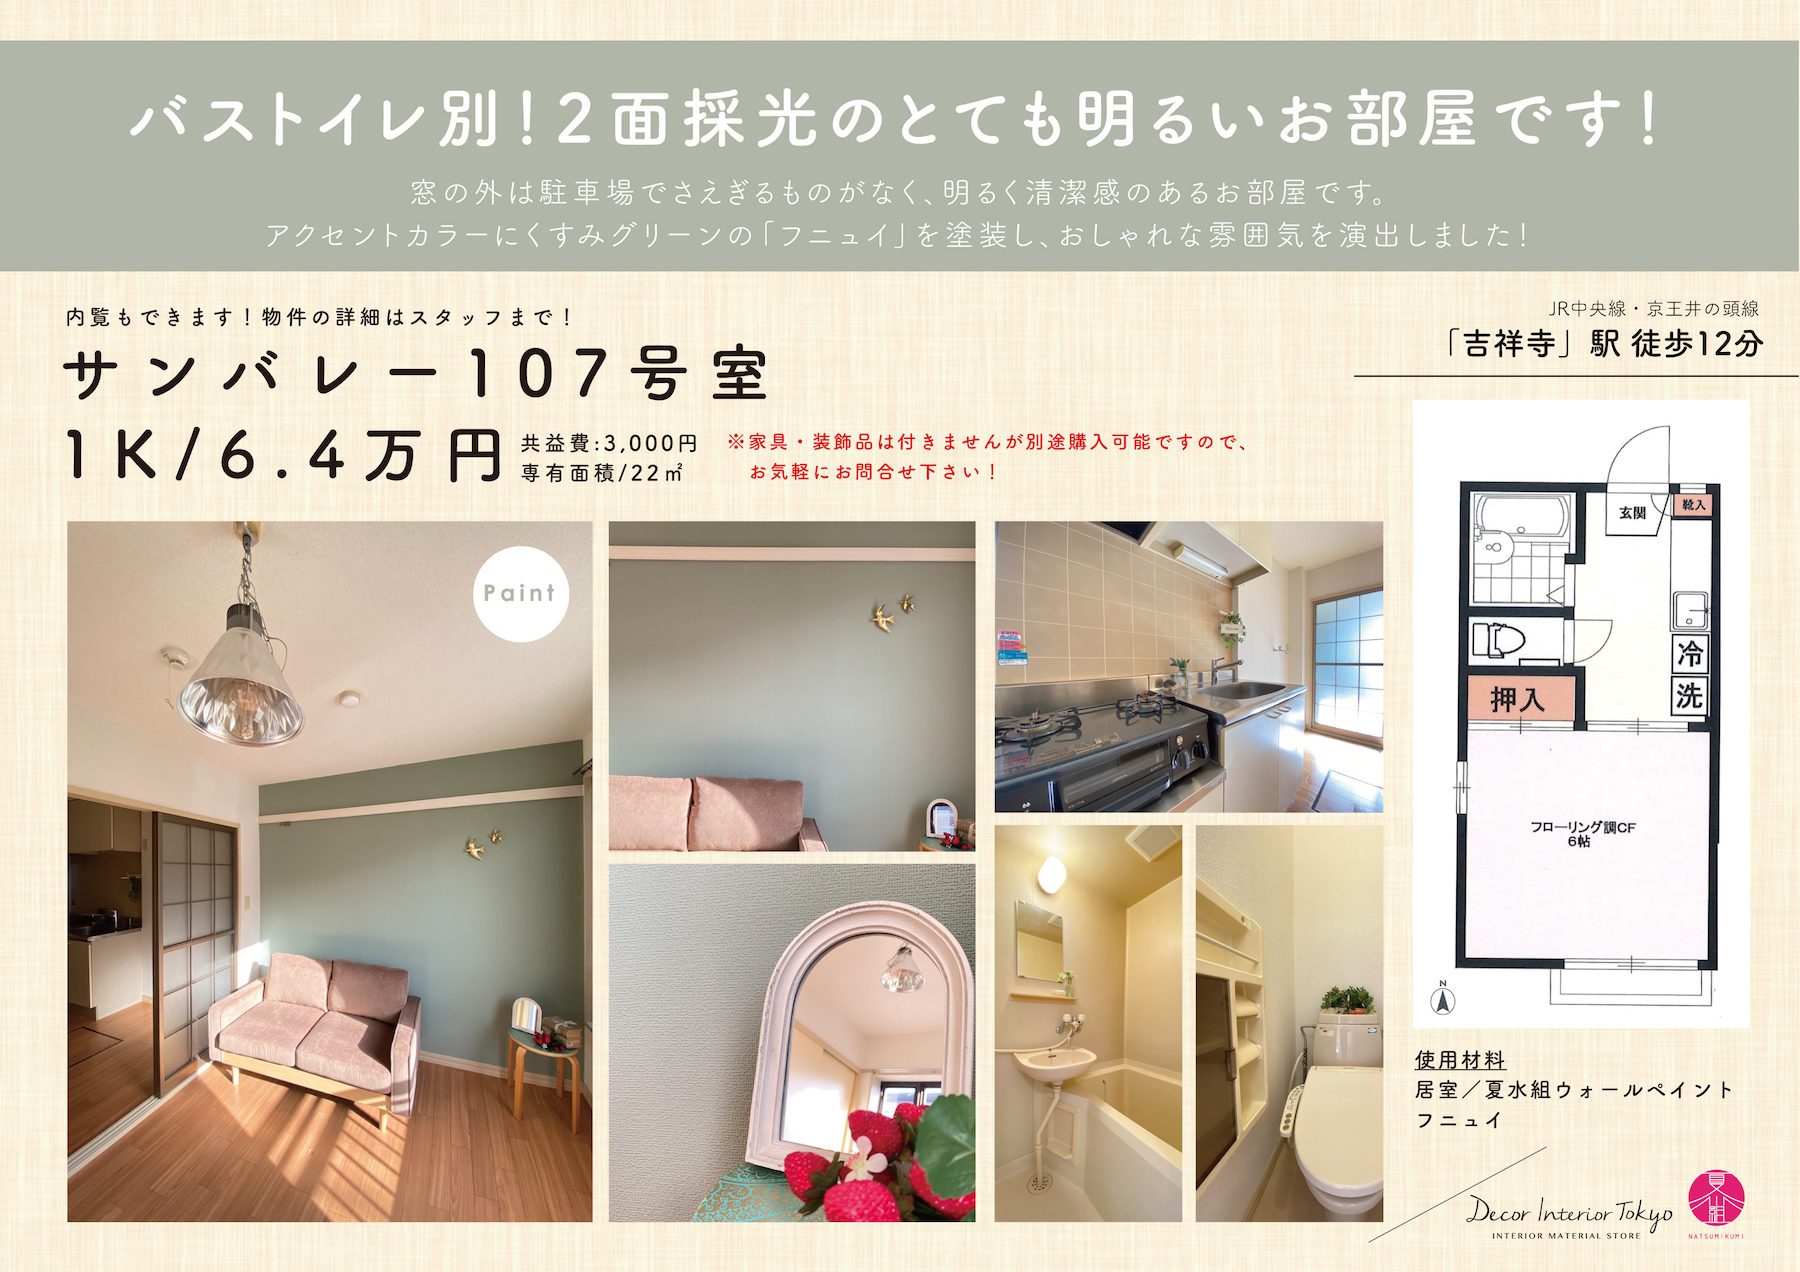 【随時更新】Decor Interior TokyoがプロデュースするDIY賃貸の物件と材料一覧・Vol.2